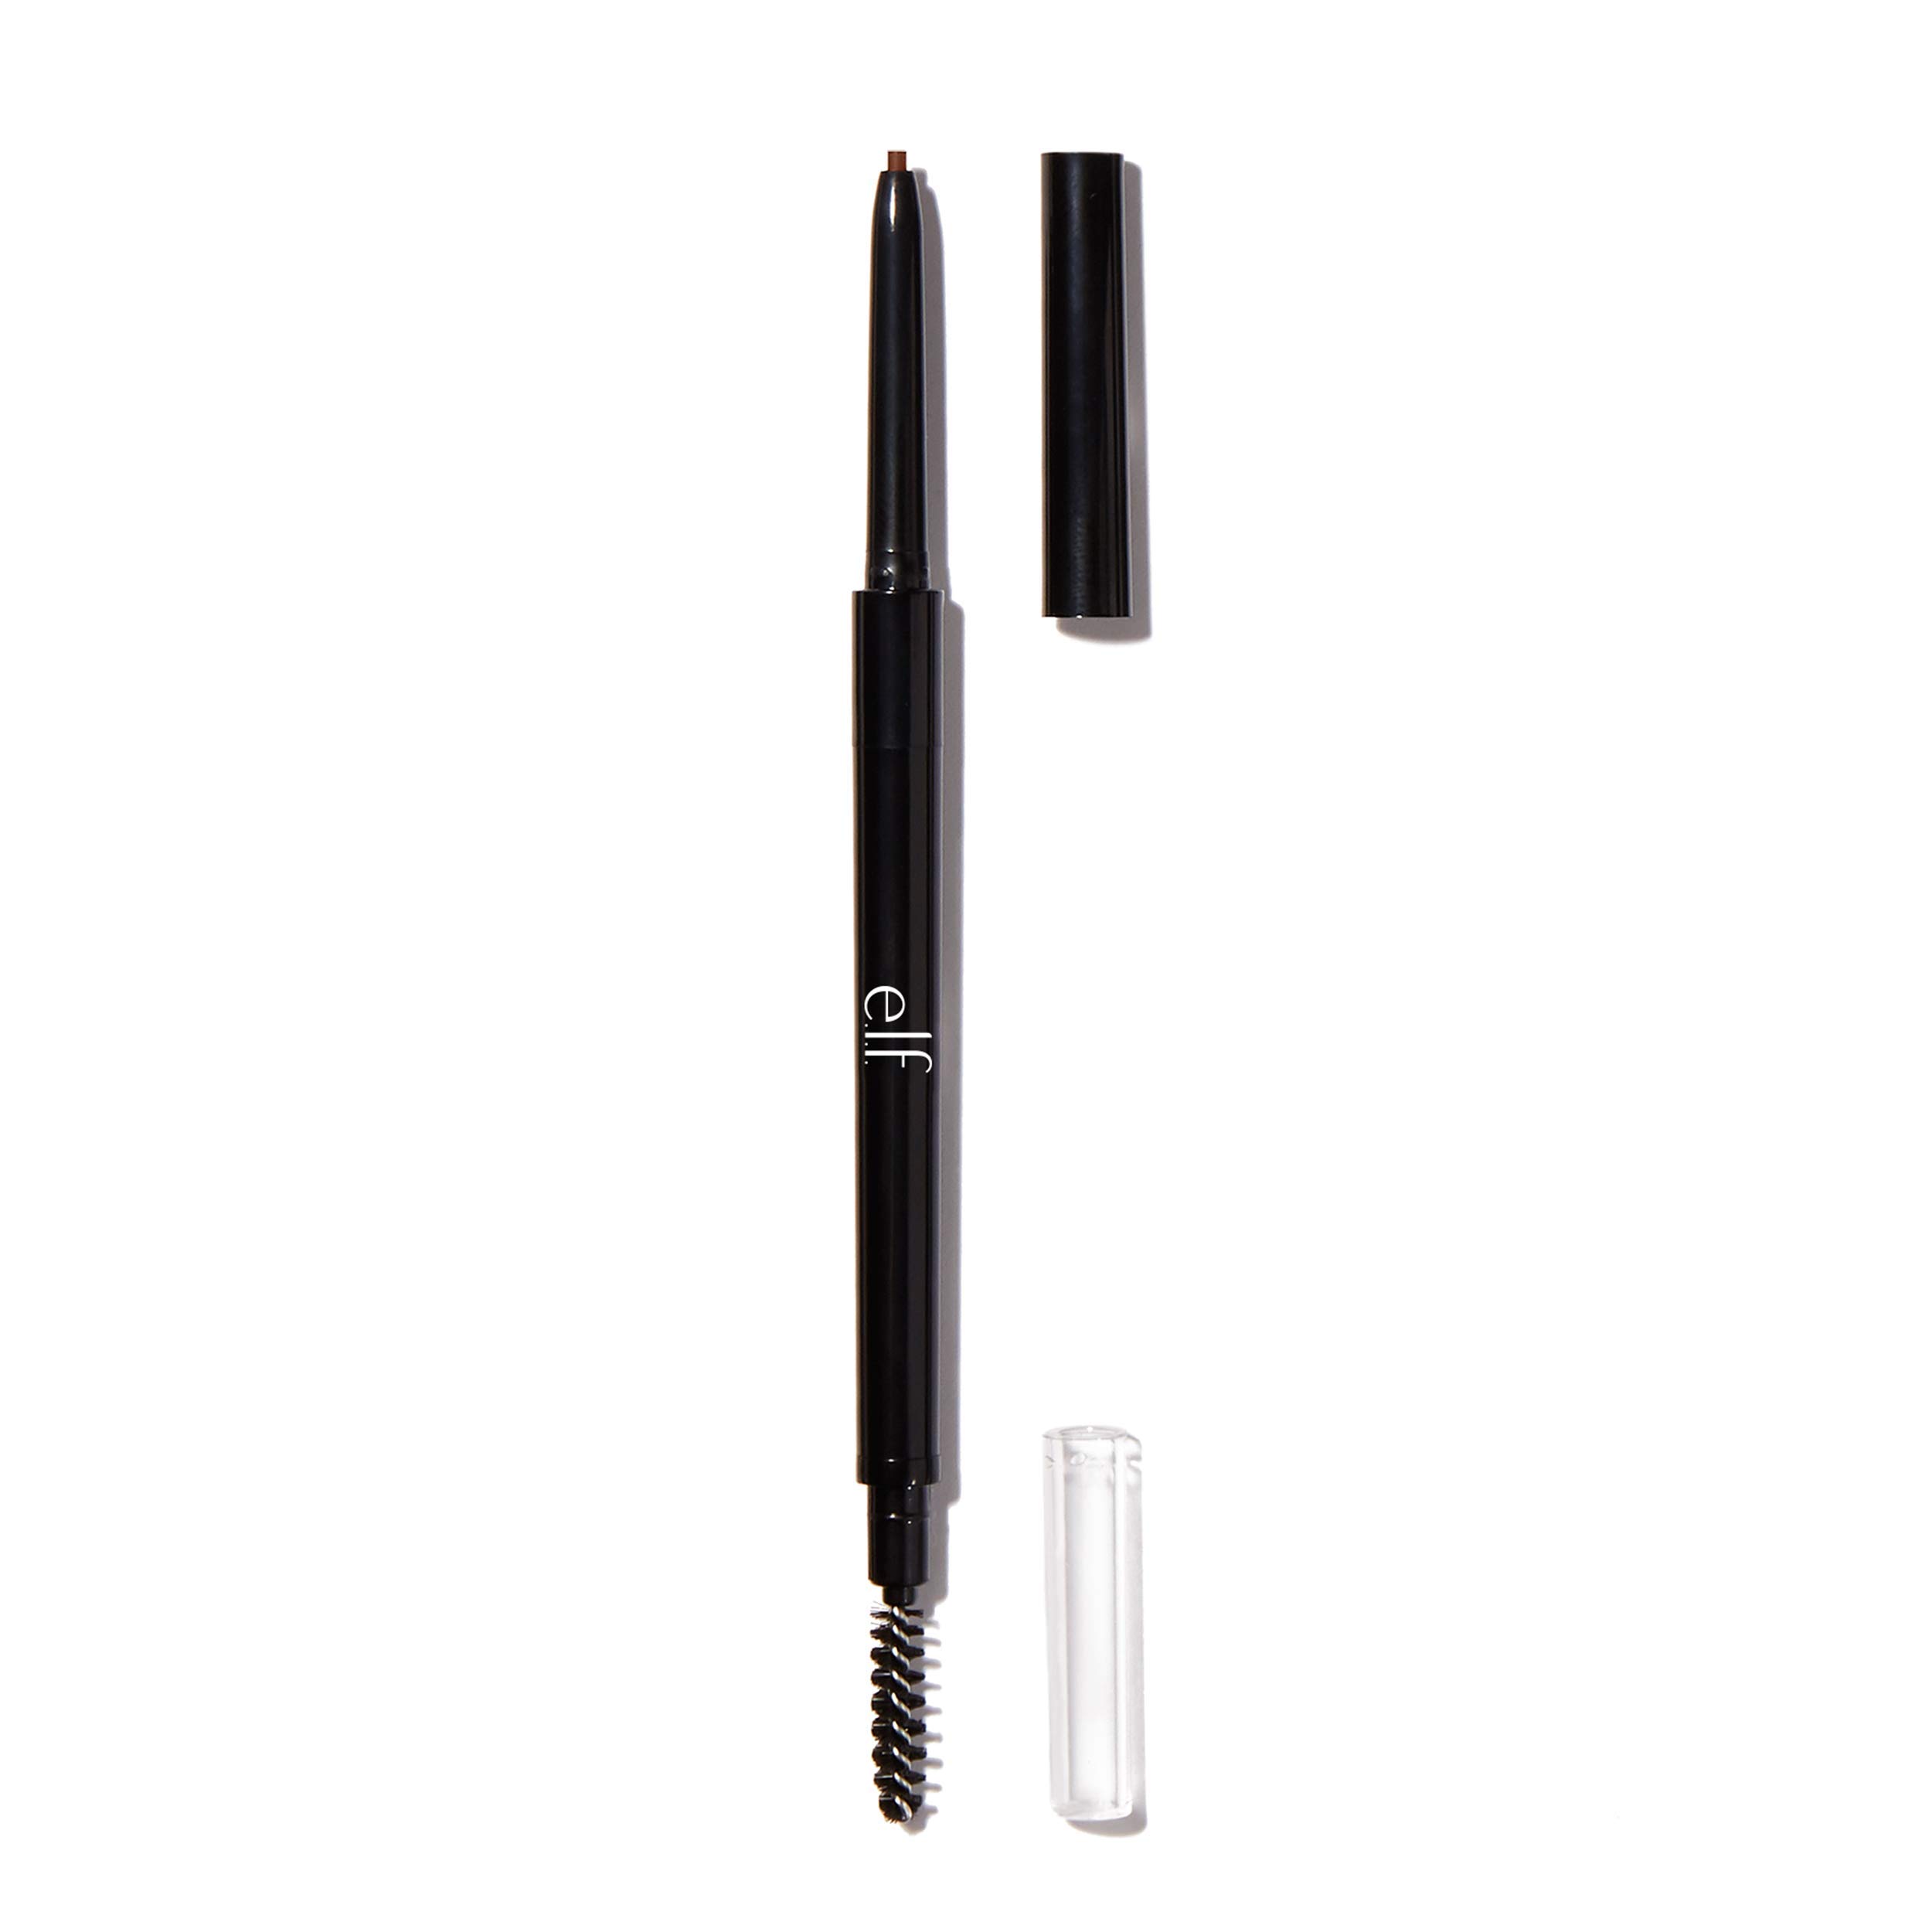 e.l.f. Cosmetics Ultra Precise Brow Pencil (Brunette) $1.30